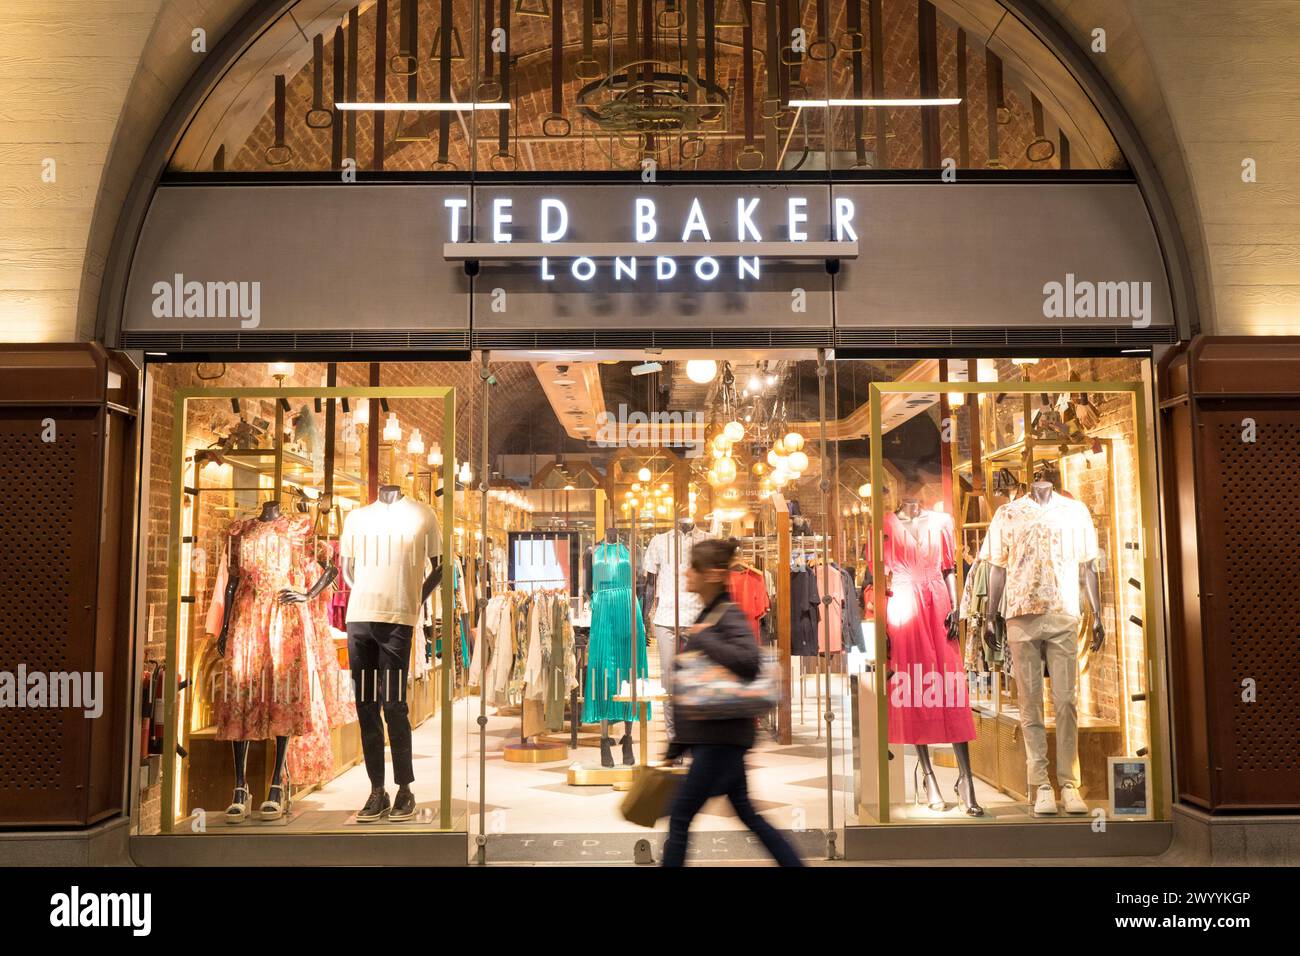 Londres Royaume-Uni , 8 avril 2024. Devant Ted Baker Londres pour fermer 15 magasins en Angleterre, les acheteurs devant Regent Street store Londres Angleterre Royaume-Uni. Crédit : Xiu Bao/Alamy Live News Banque D'Images